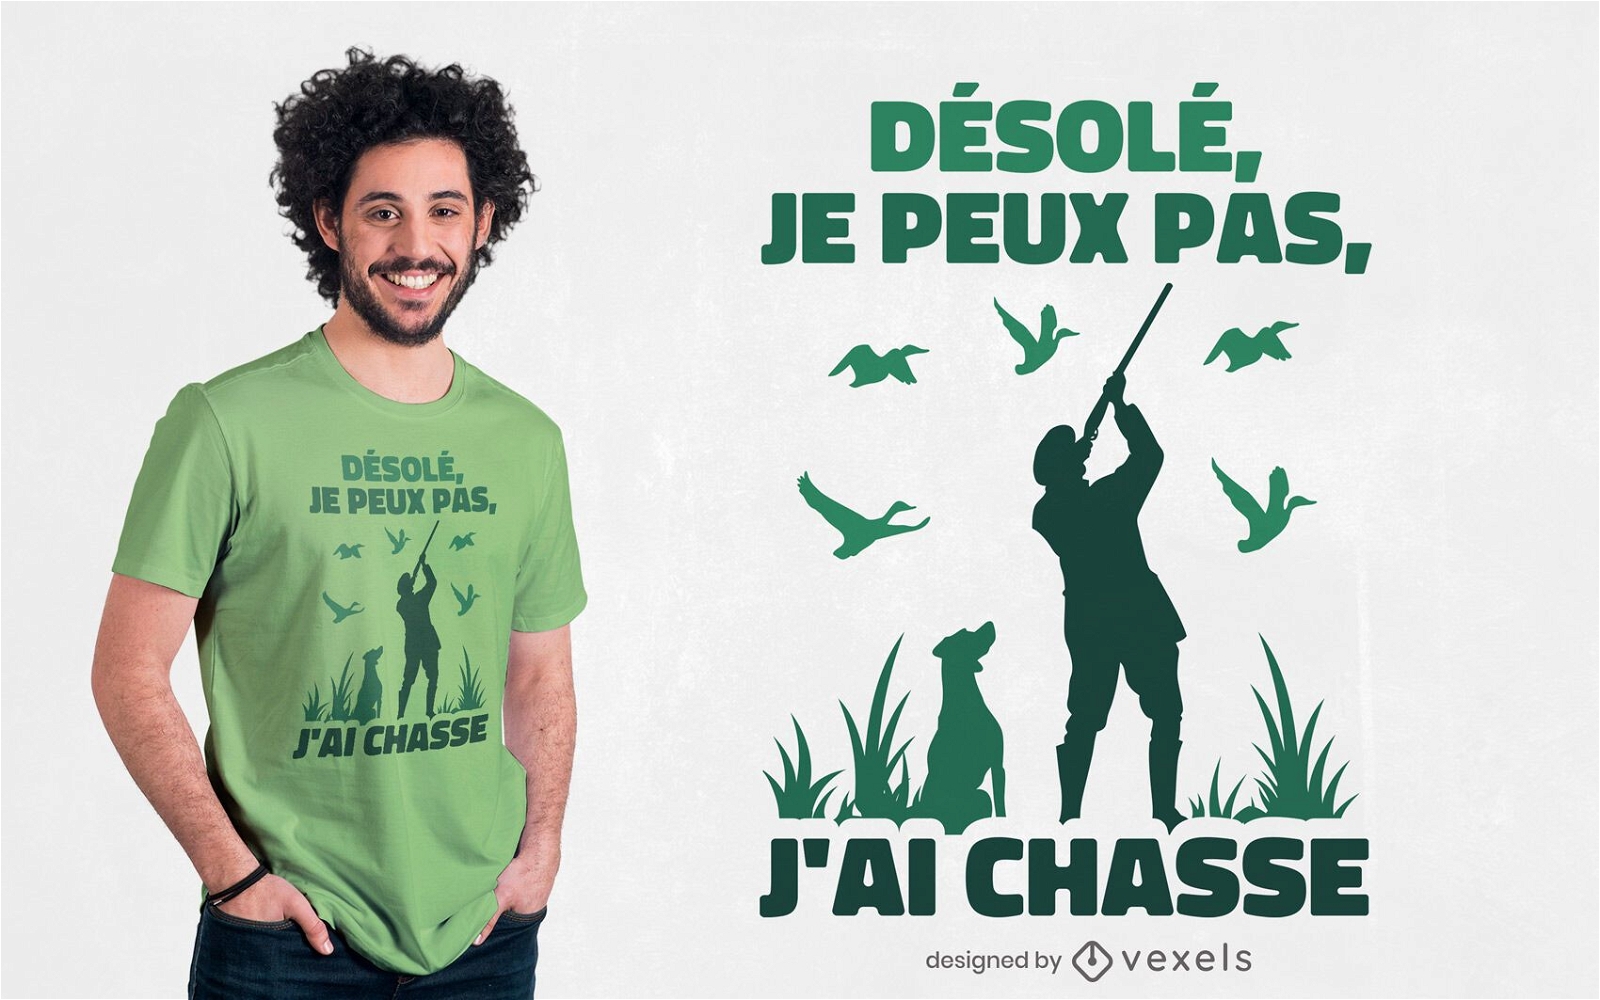 Desenho de camiseta com citações francesas